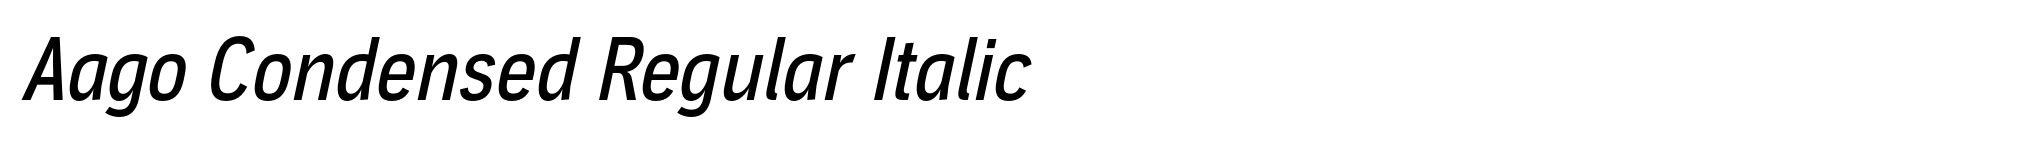 Aago Condensed Regular Italic image